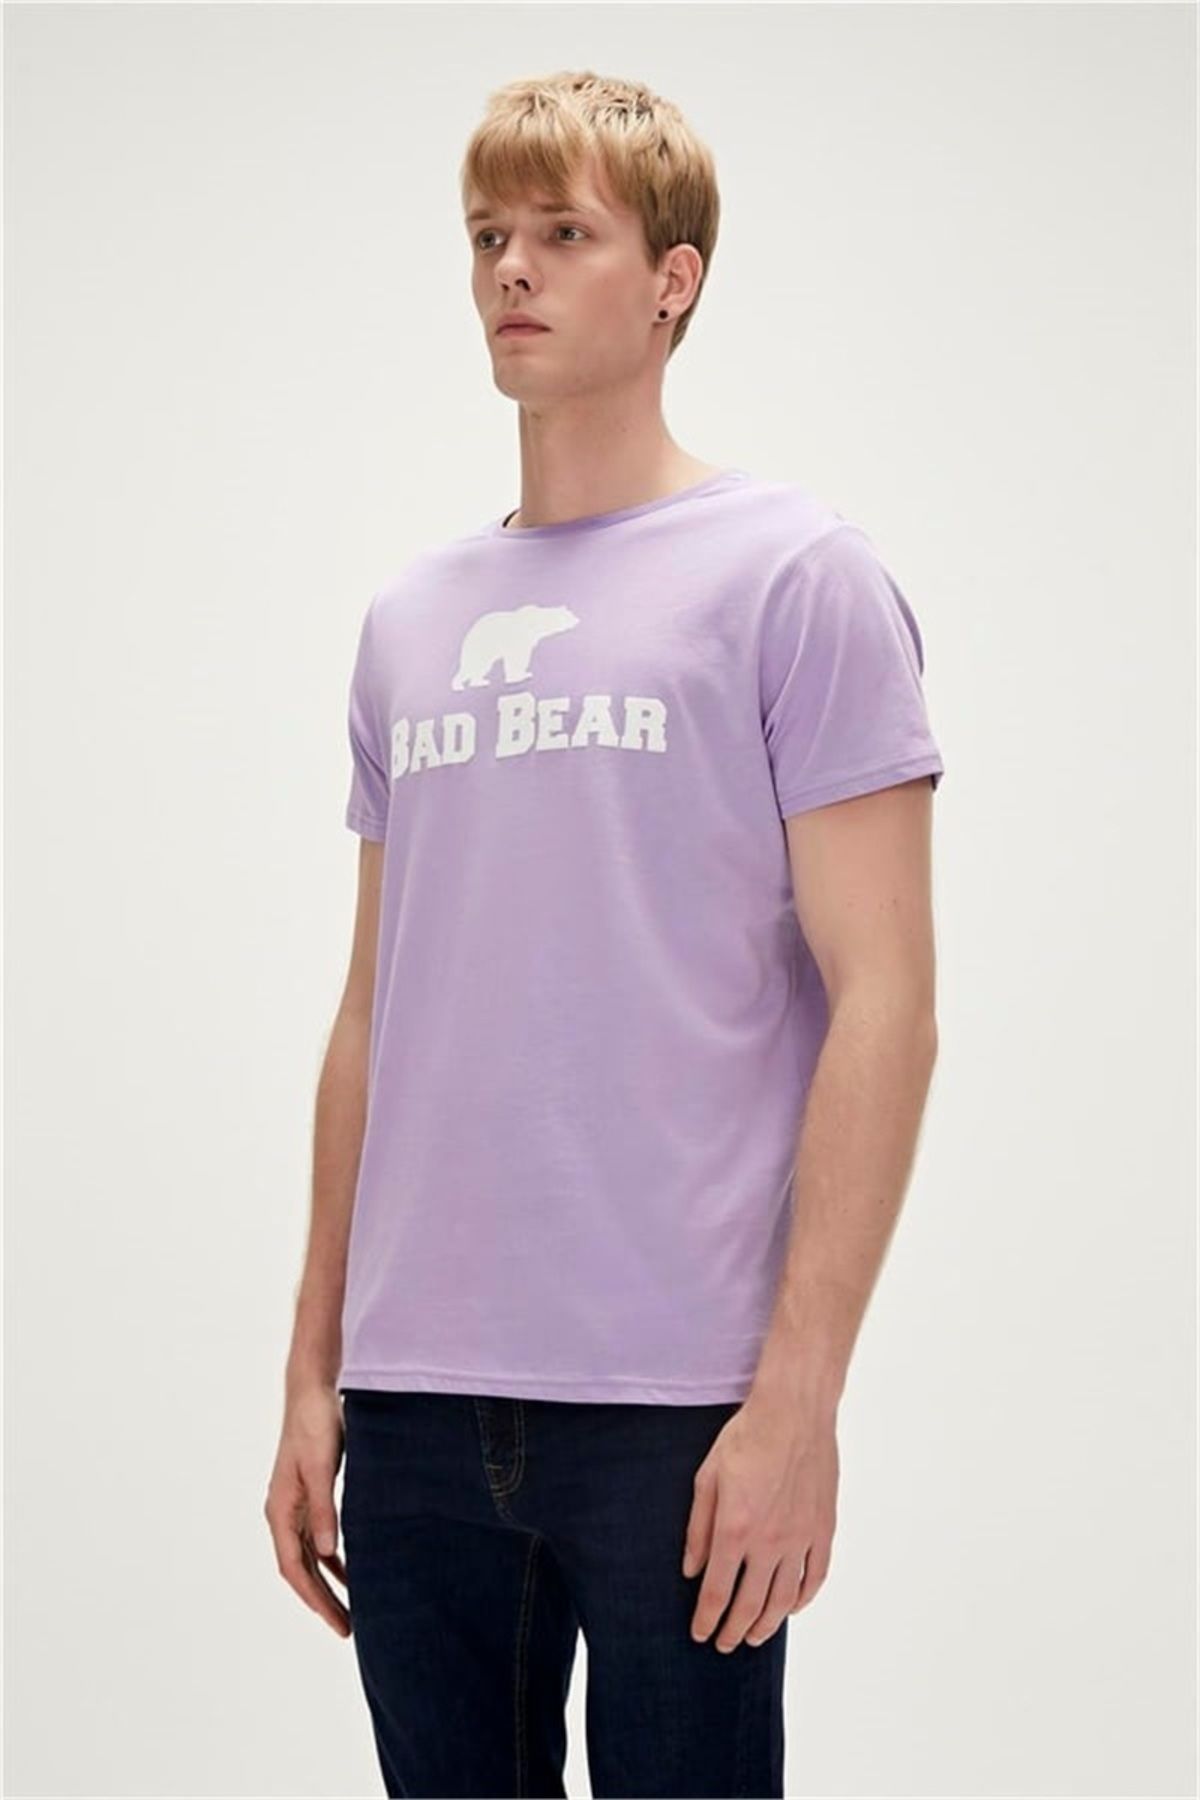 Bad Bear Tee Erkek T-shirt 19.01.07.002 Tuscany